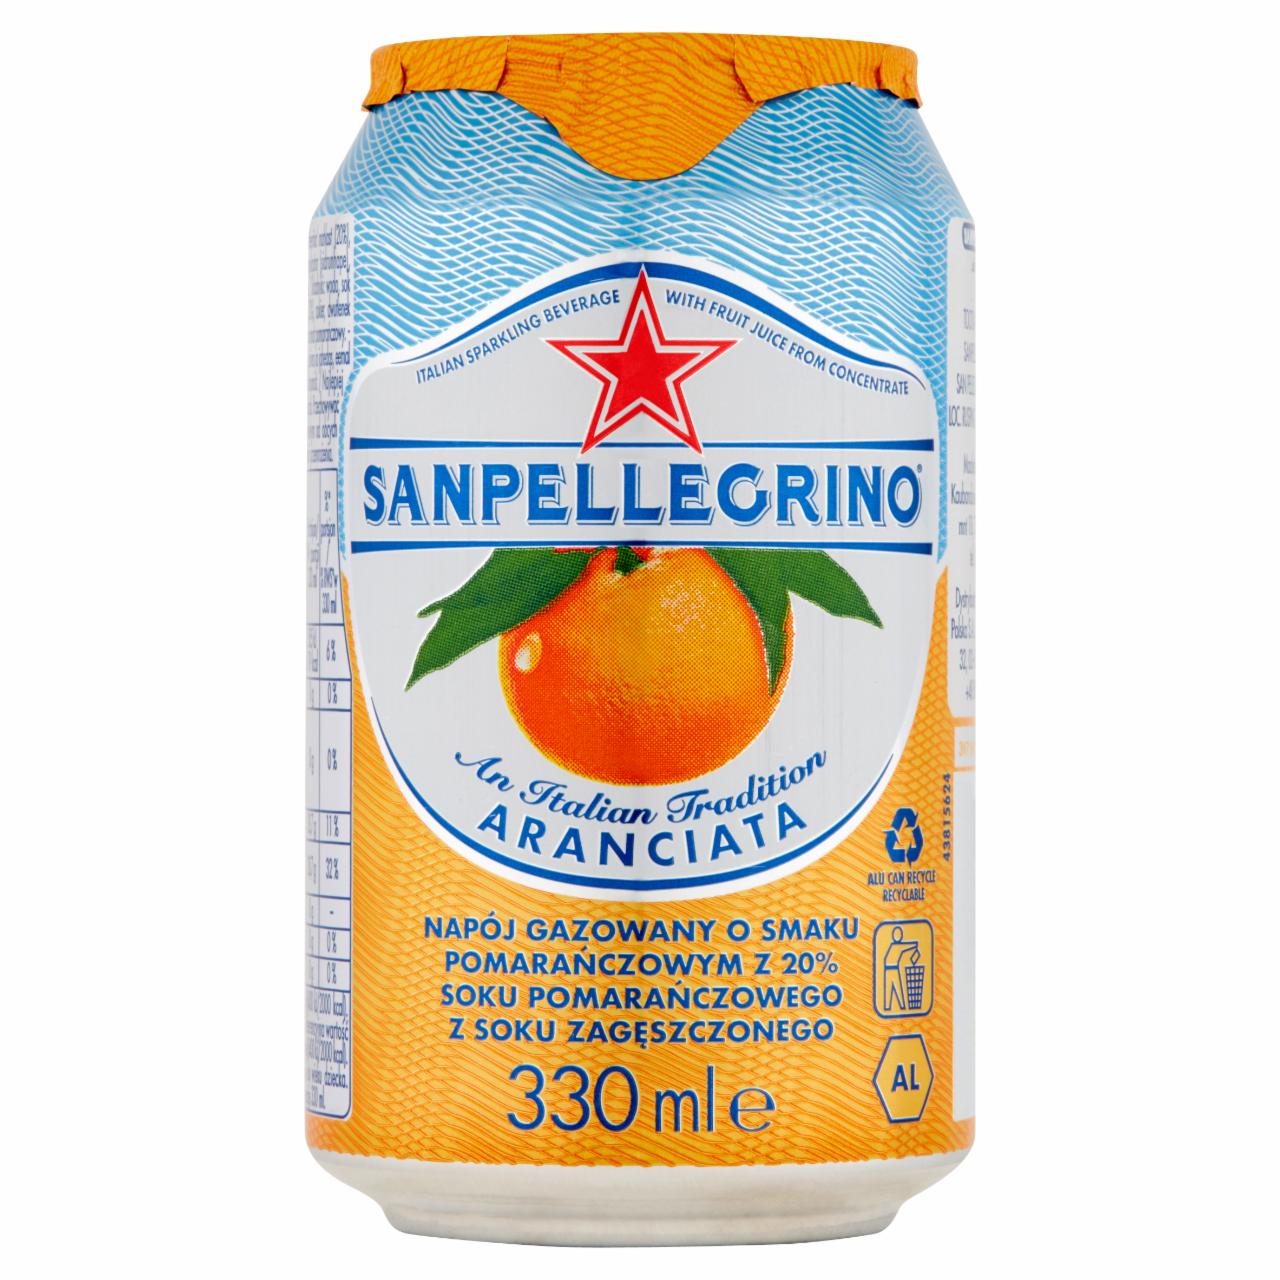 Zdjęcia - Sanpellegrino Aranciata Napój gazowany o smaku pomarańczowym 330 ml